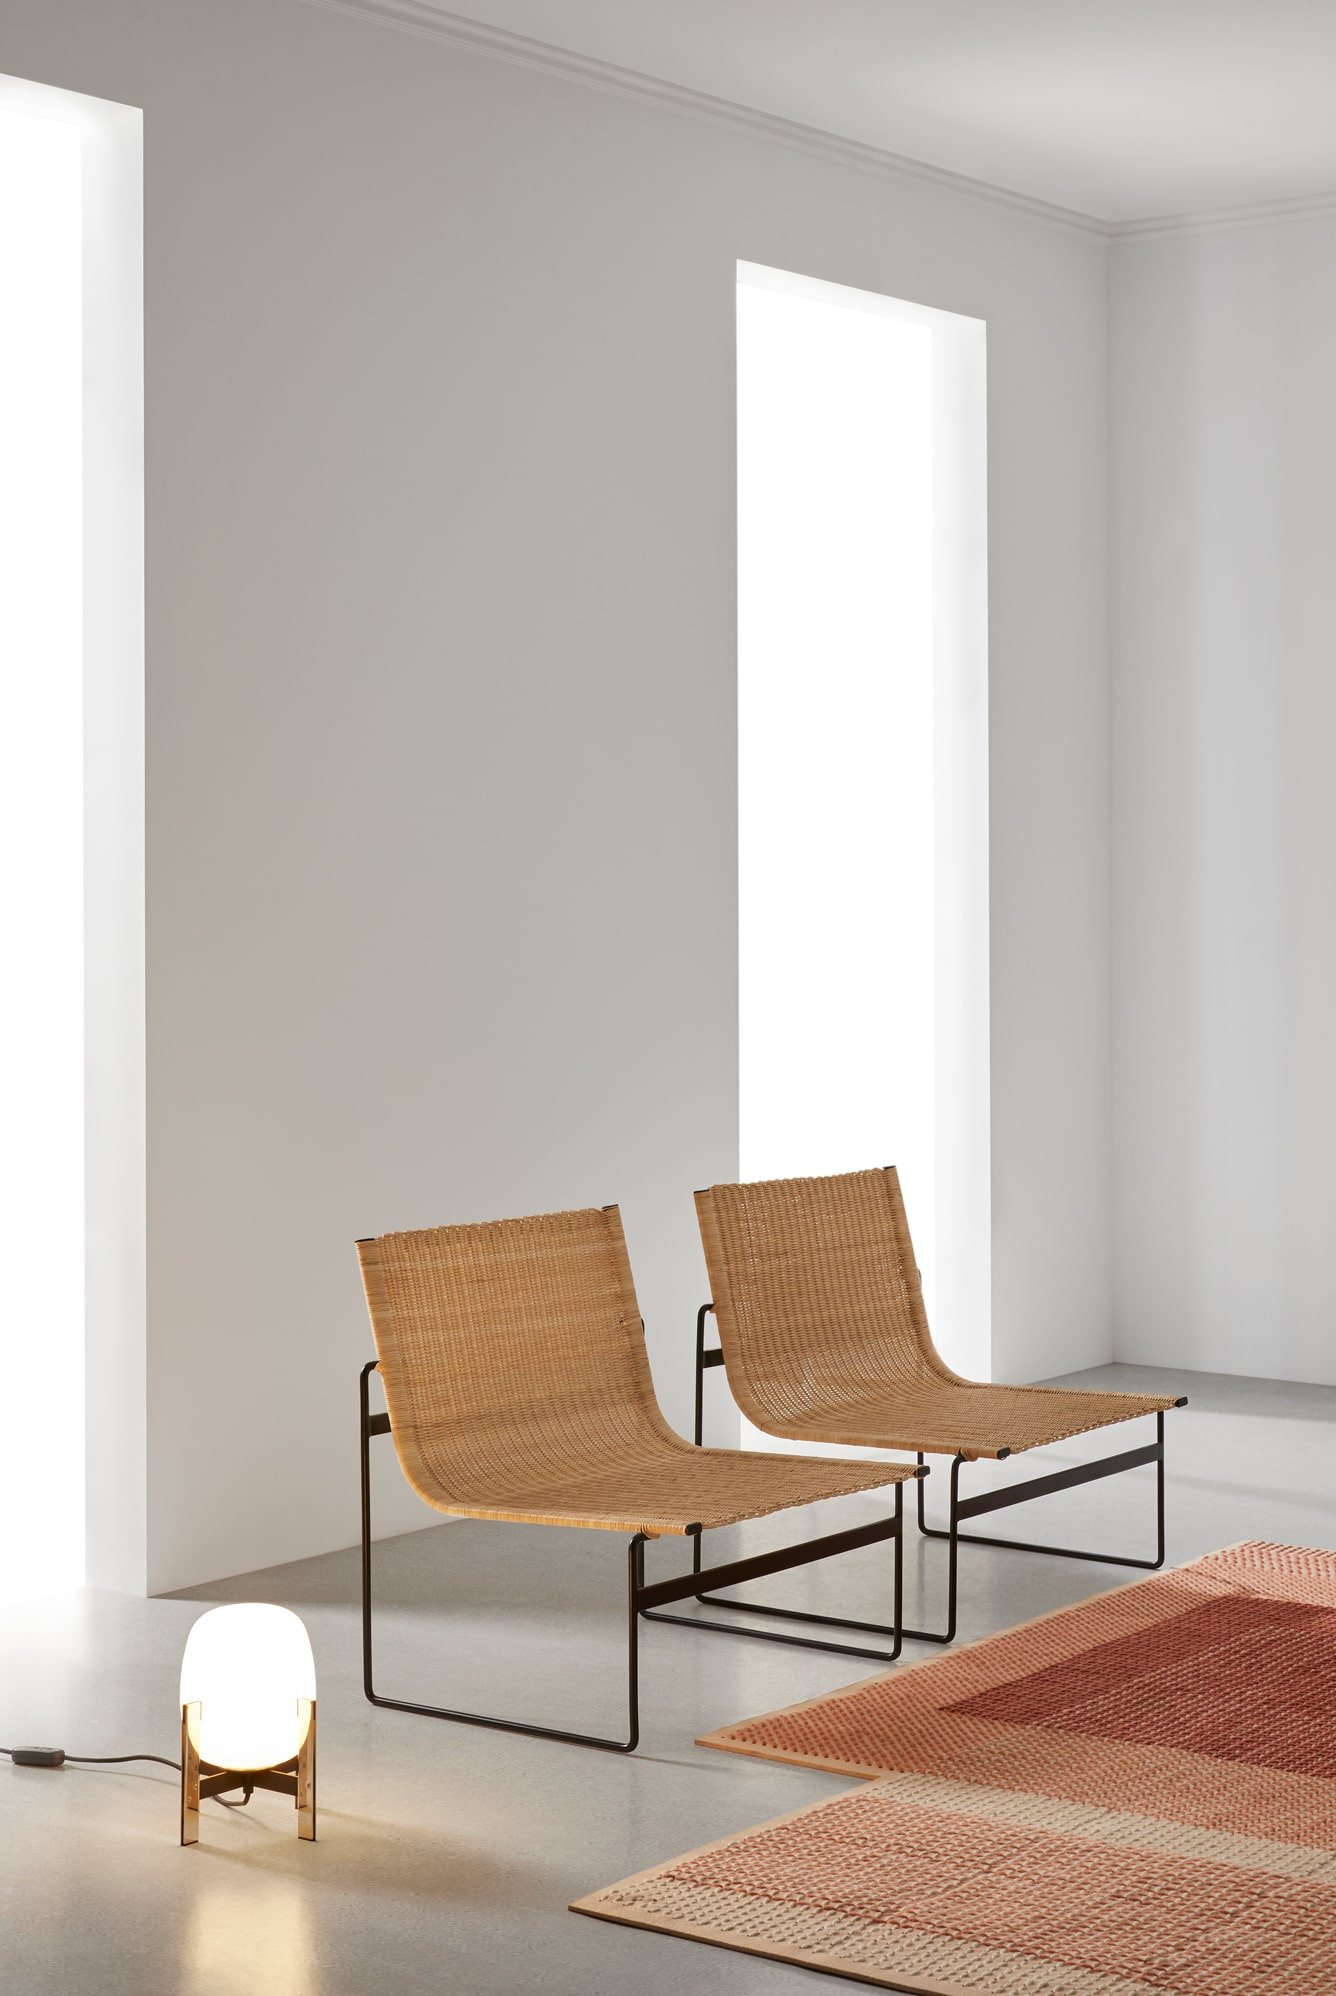 Foto Ambiente Butacas de Ratán de la colección Formentor - Muebles de diseño por Blasco&Vila